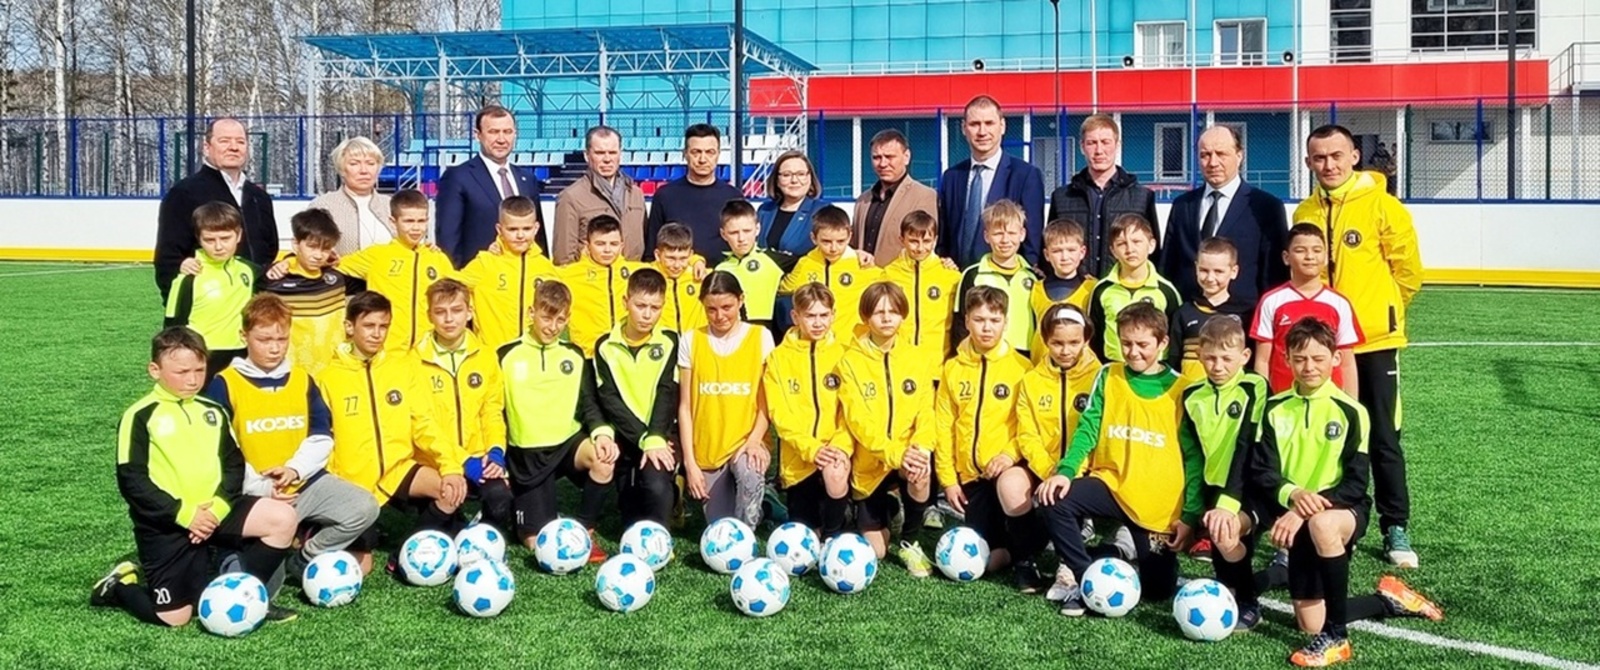 ООО «Центр питания» Чишминского района стал меценатом для юных футболистов